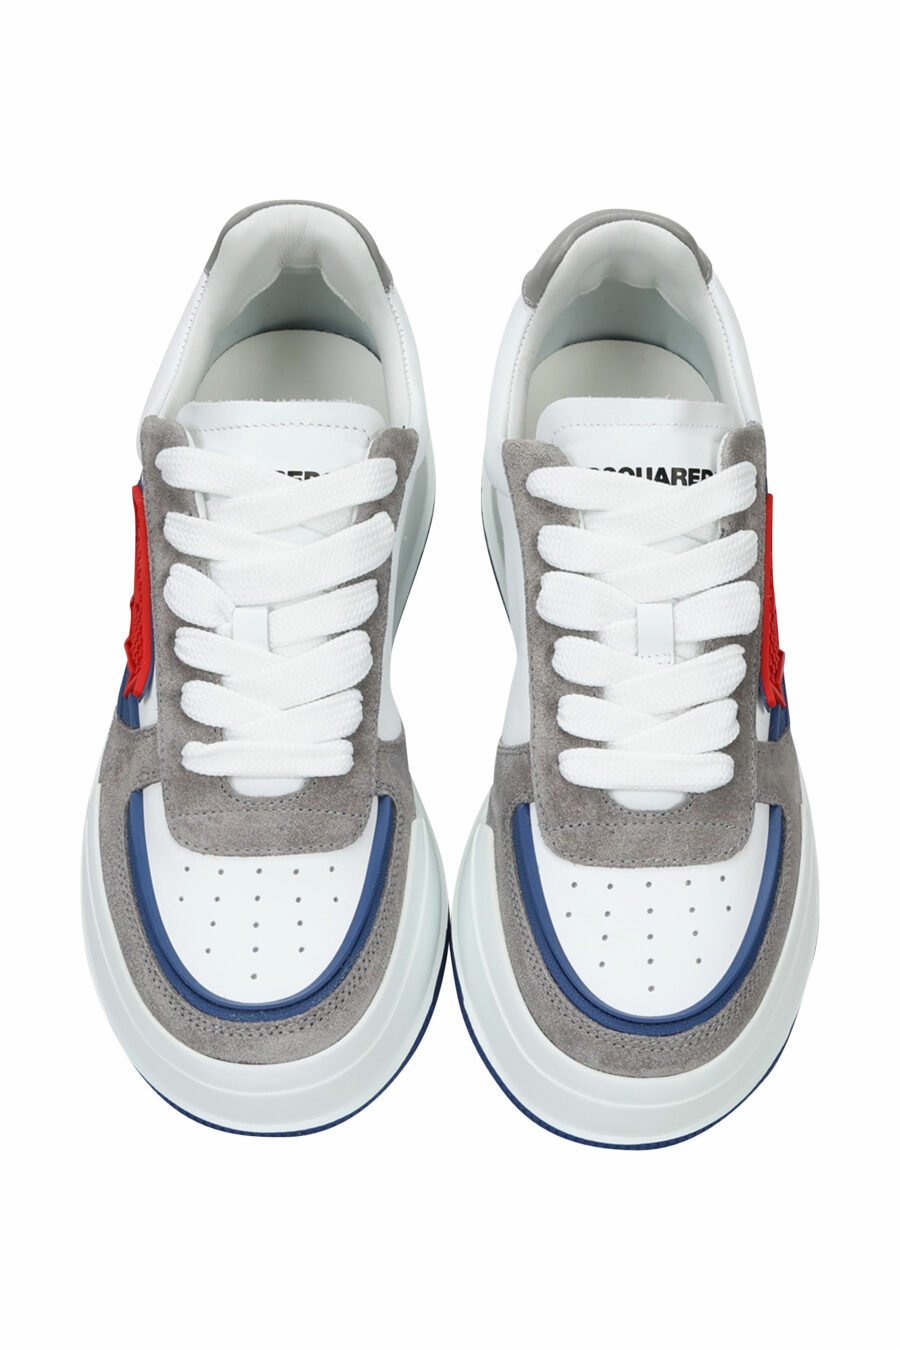 Zapatillas blancas mix con gris, azul y logo hoja roja - 8055777242216 4